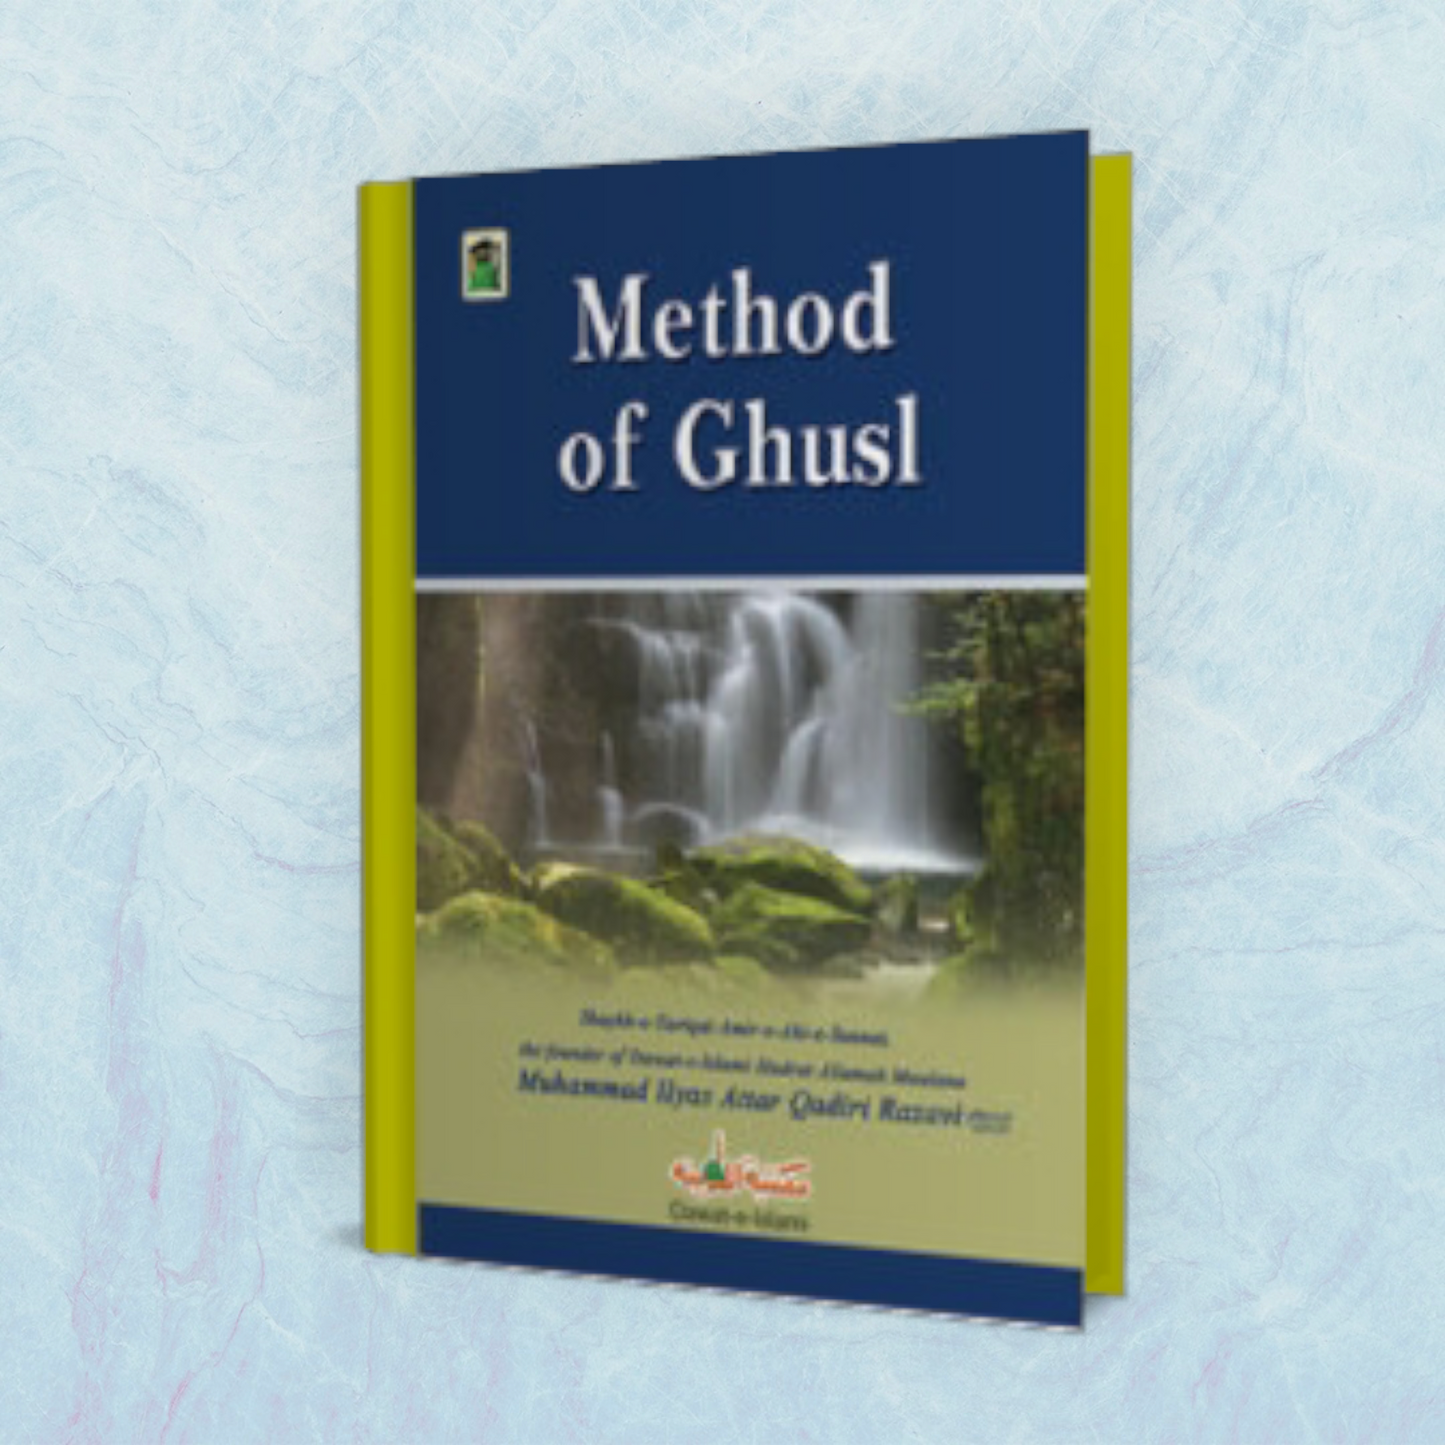 Method of Ghusl - Ghusl Ka Tareeqa (Hanafi)